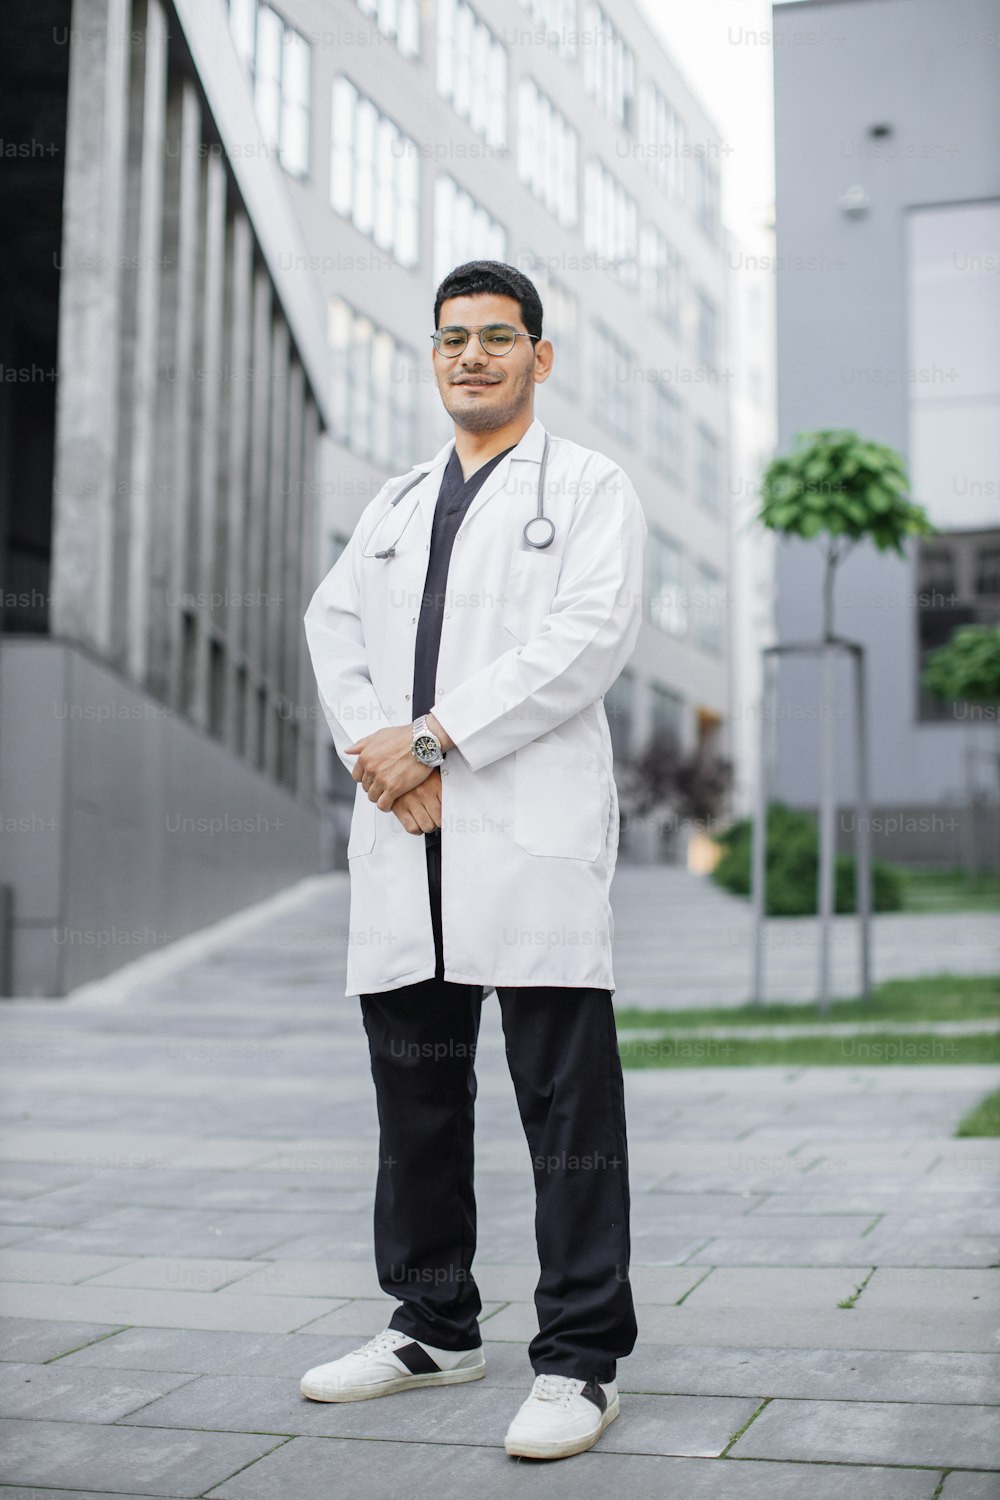 Un jeune et beau médecin saoudien souriant à l’extérieur de l’hôpital. Portrait en pied d’un étudiant en médecine en blouse blanche, posant devant un bâtiment universitaire ou une clinique moderne